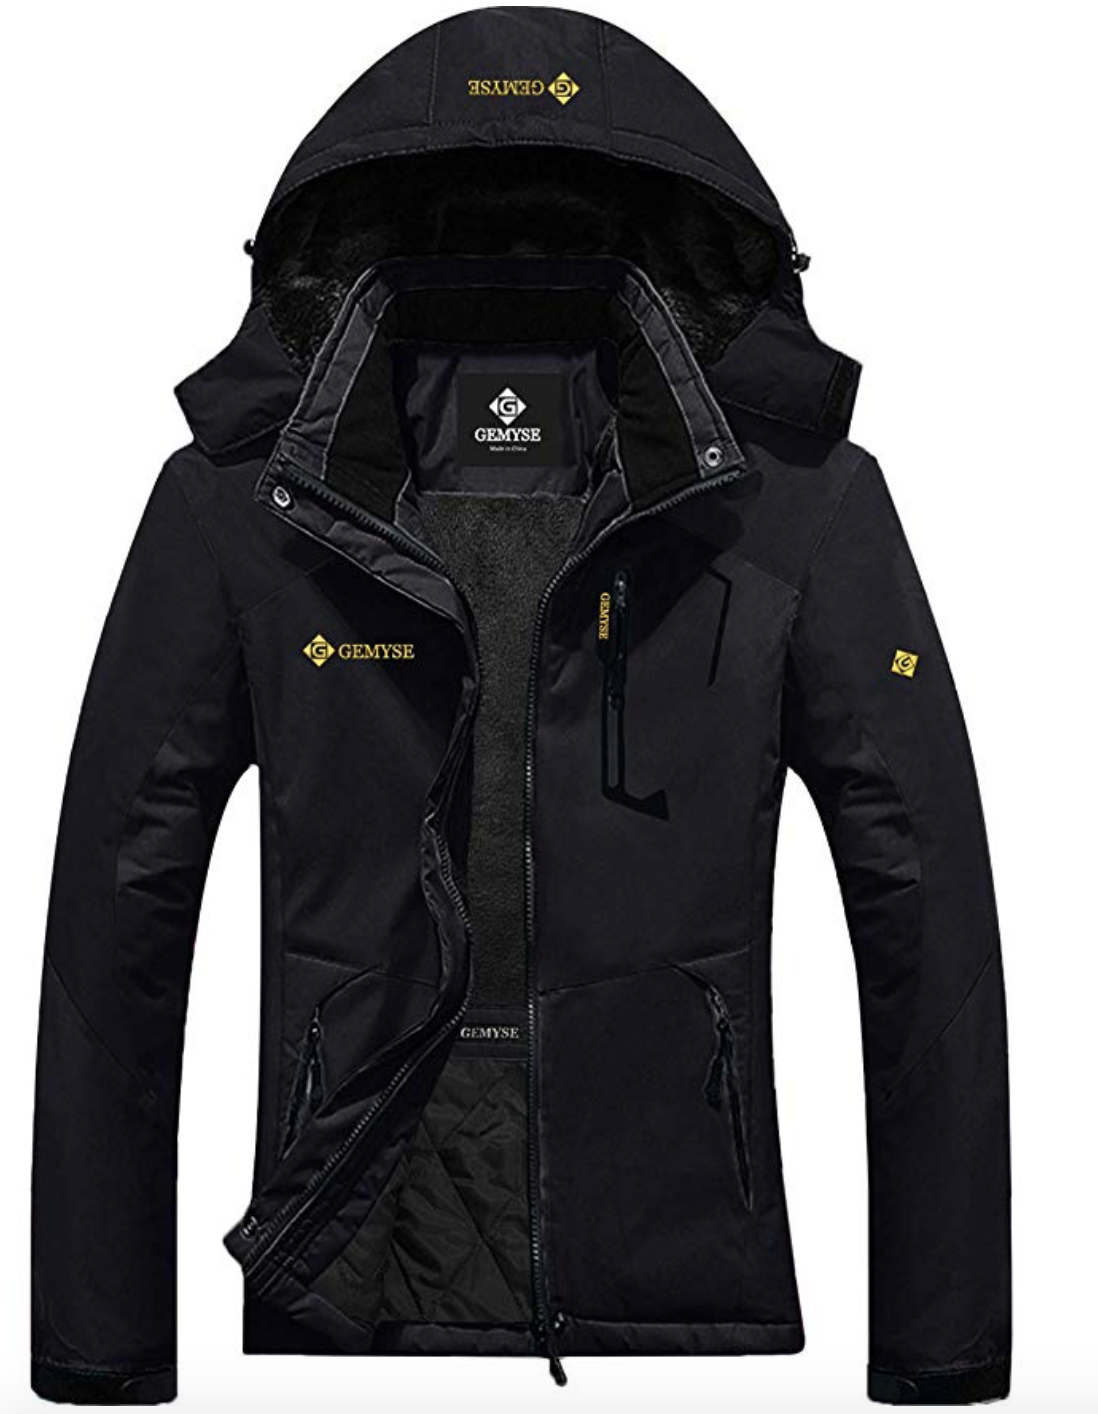 Gemyse Women's Snowboard Mountain Jacket Under $150